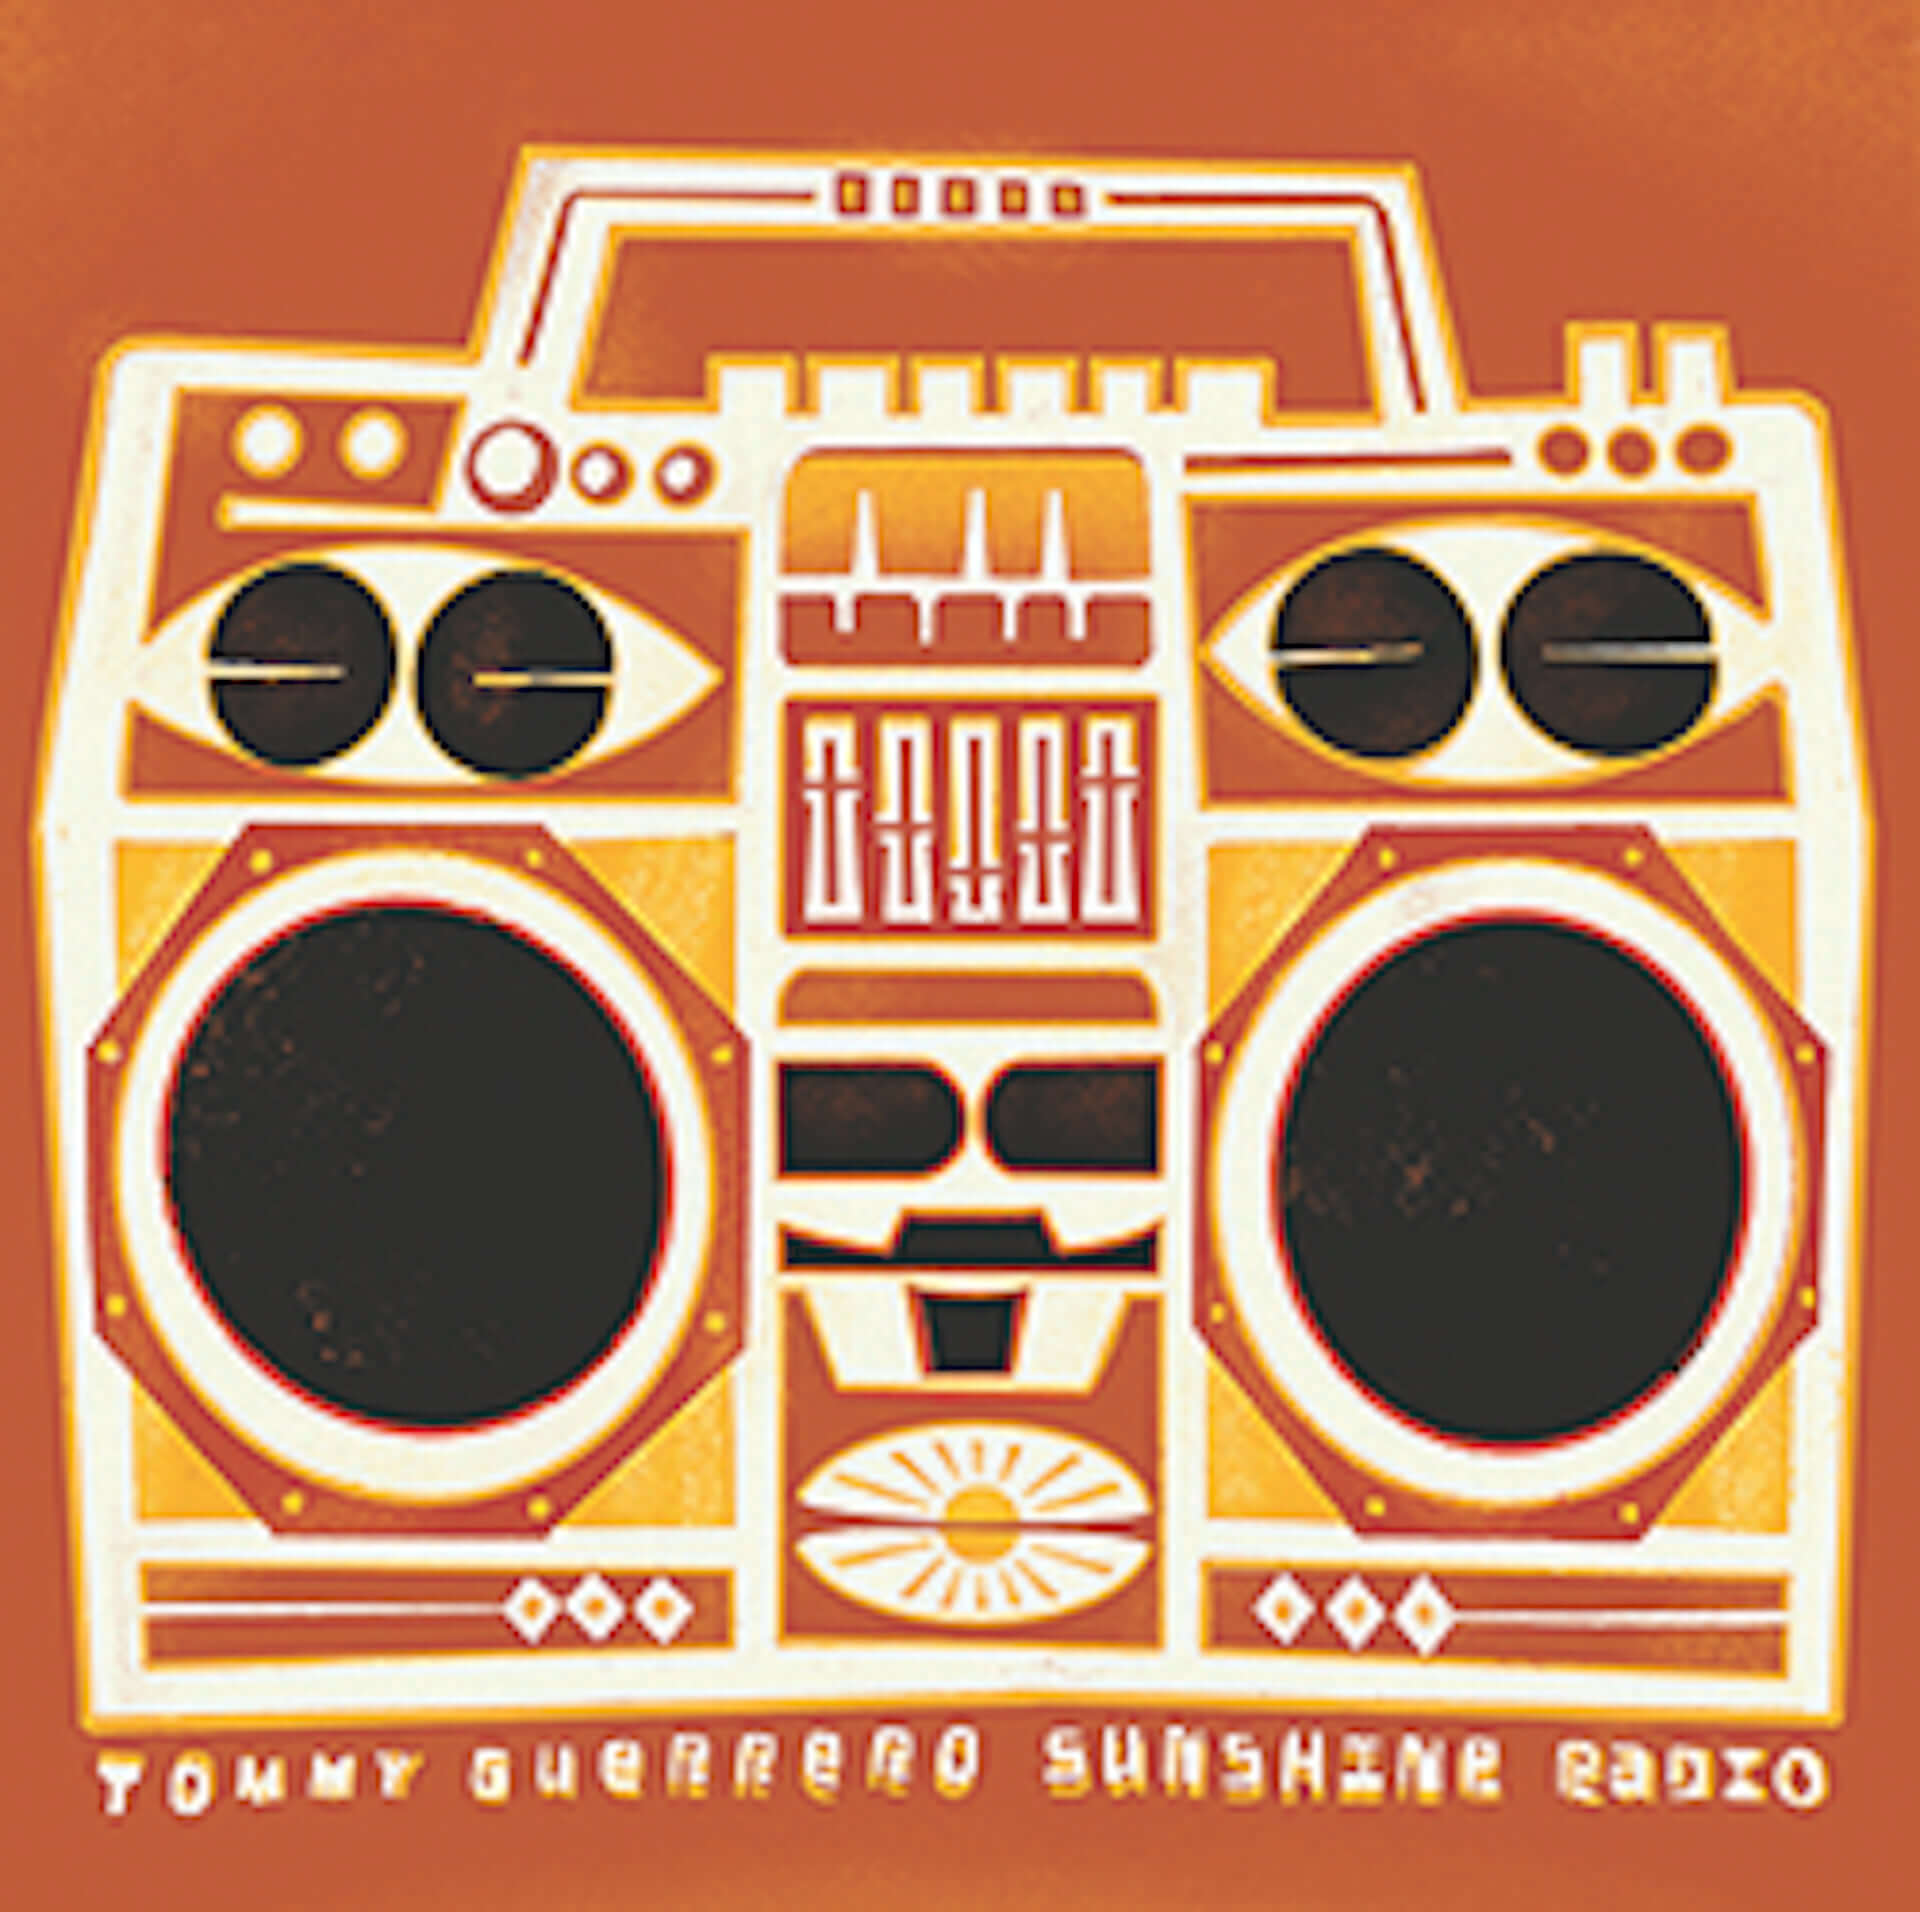 Tommy Guerreroによる11枚目のアルバム『Sunshine Radio』が発売決定！収録曲のノスタルジックなMVも公開 music201208_tommy-guerrero_2-1920x1912